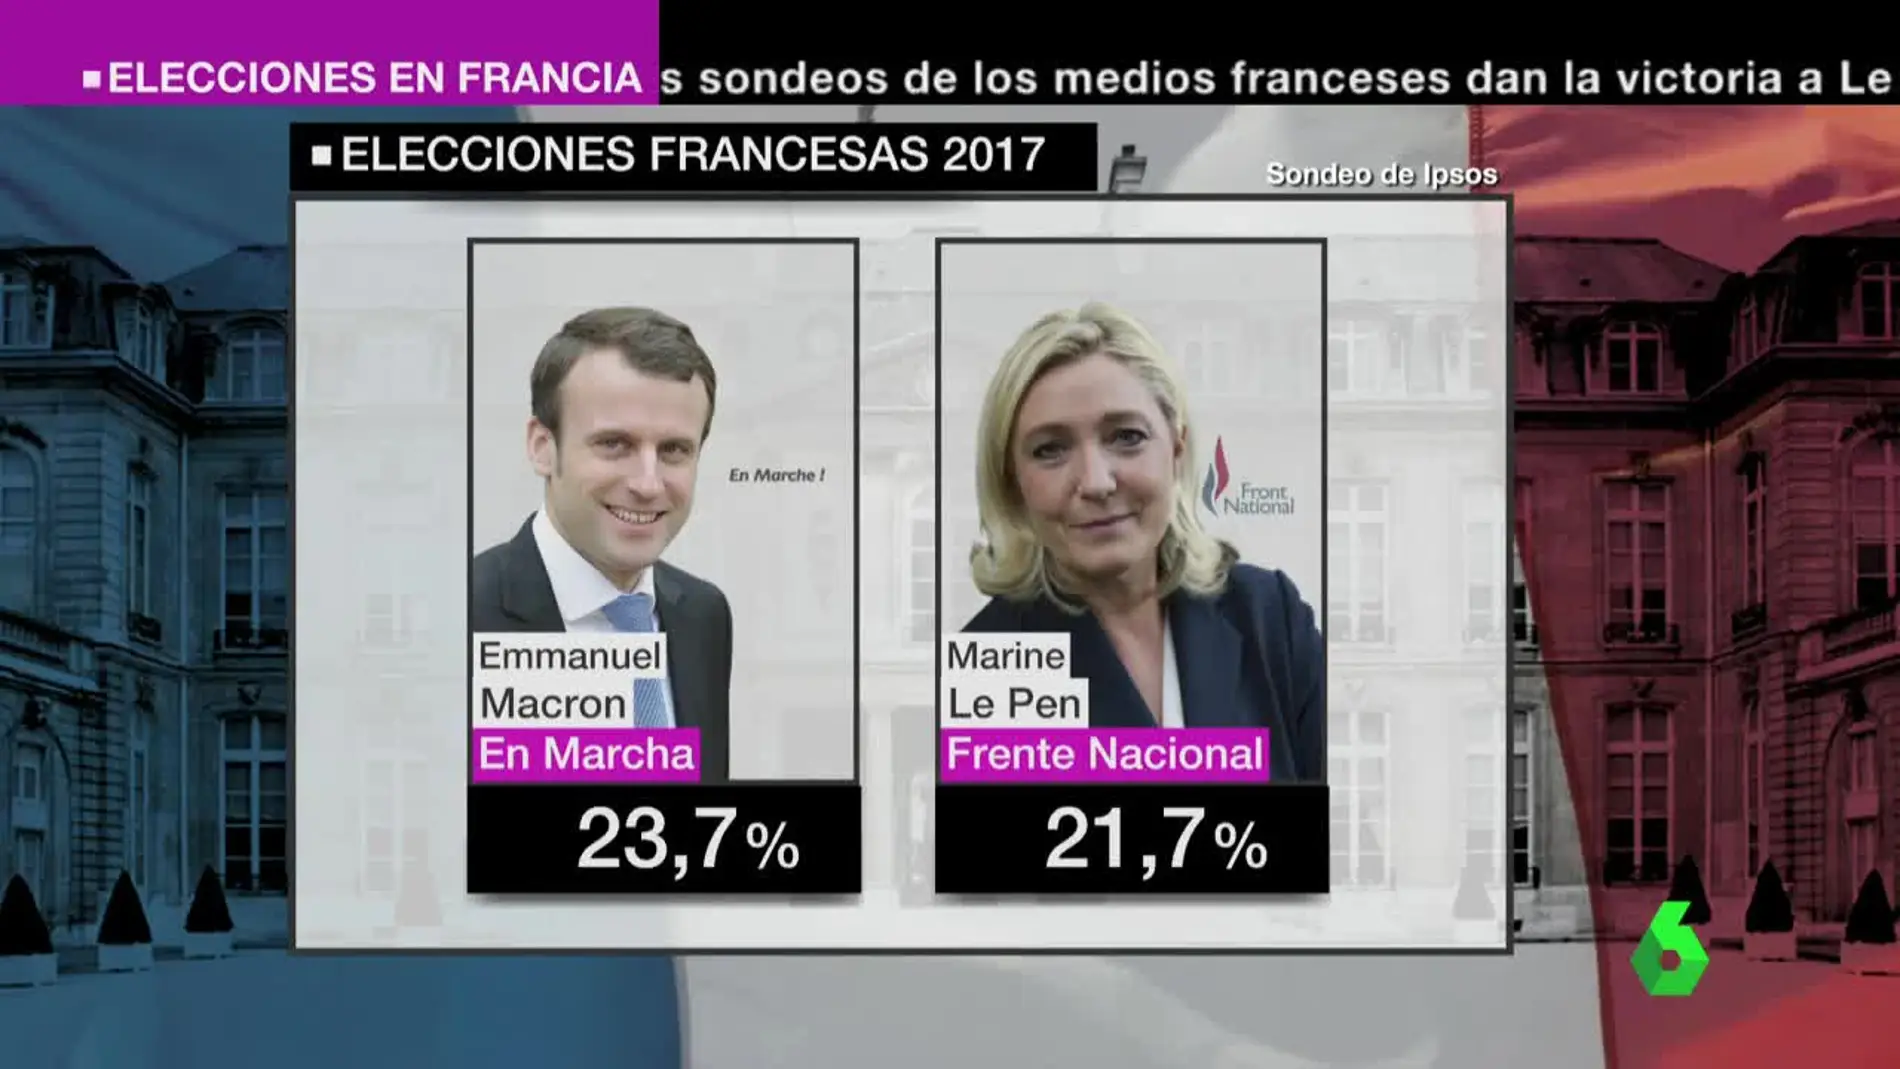 Macron y Le Pen se enfrentarán en la segunda vuelta de las elecciones  francesas, según los primeros sondeos